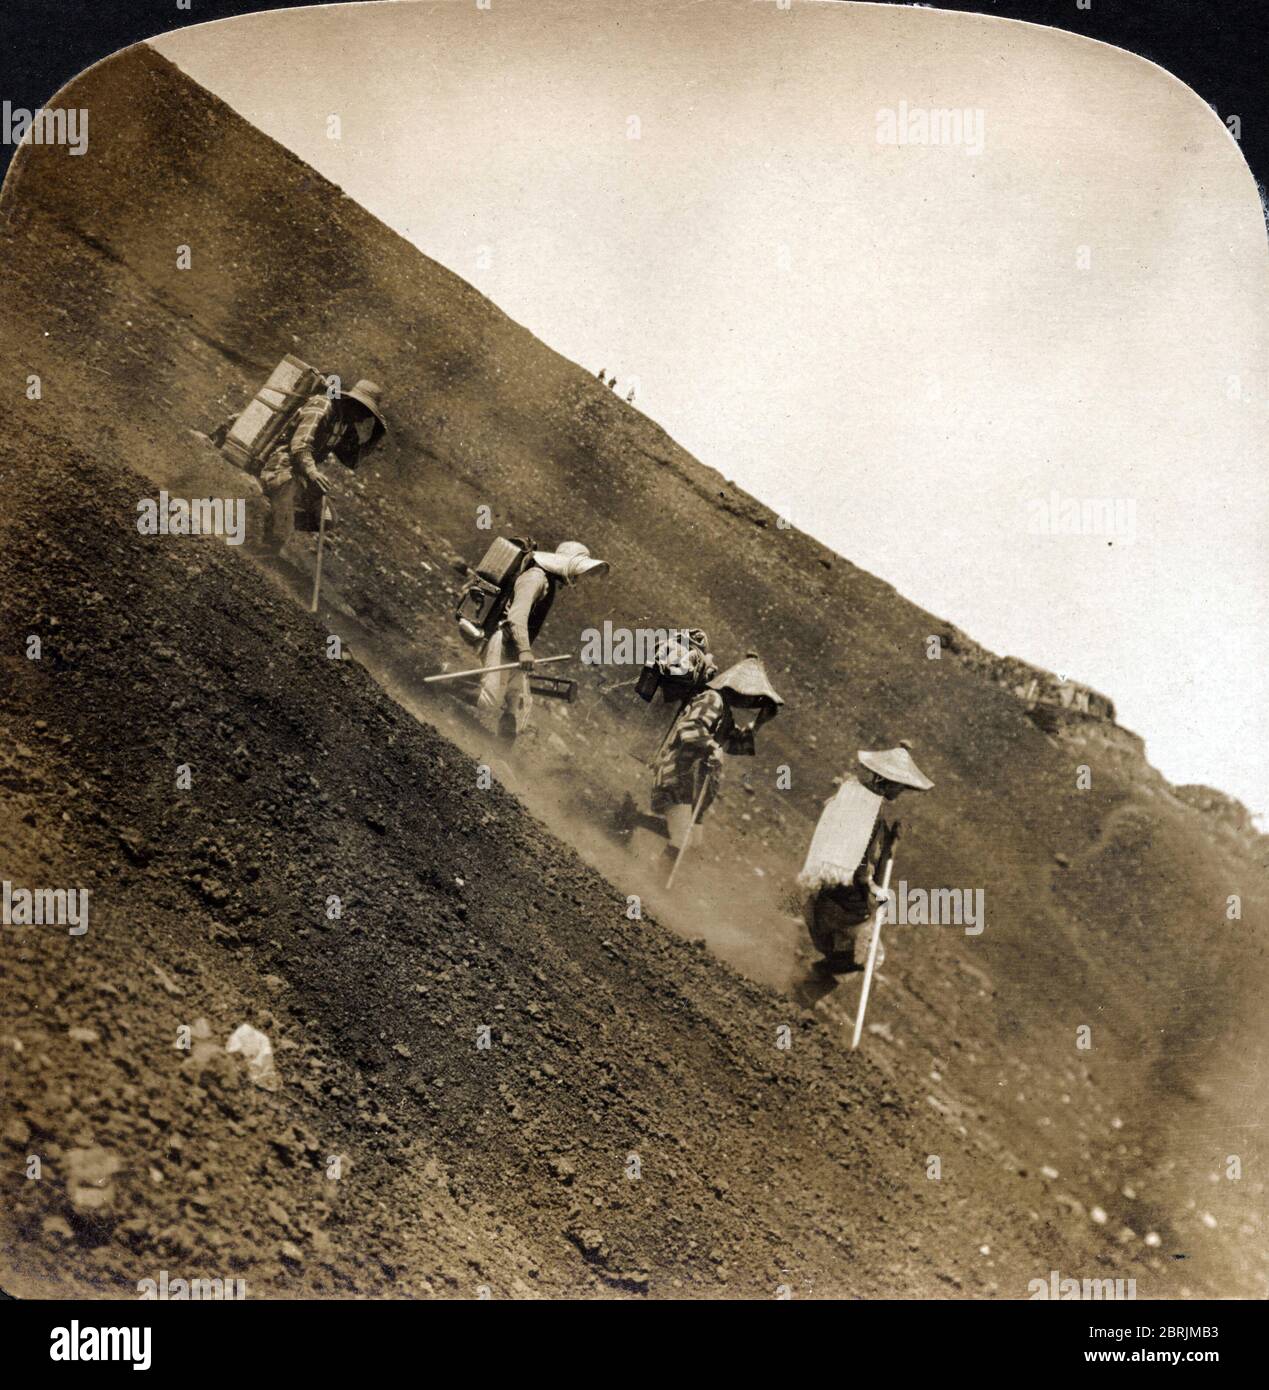 'Pelerins japonais sur le mont Fuji (Mont-Fuji), devalant la pente raide a leur retour, Japon' Photographie vers 1895 (Rapid descent of Fuji pilgrims Stock Photo